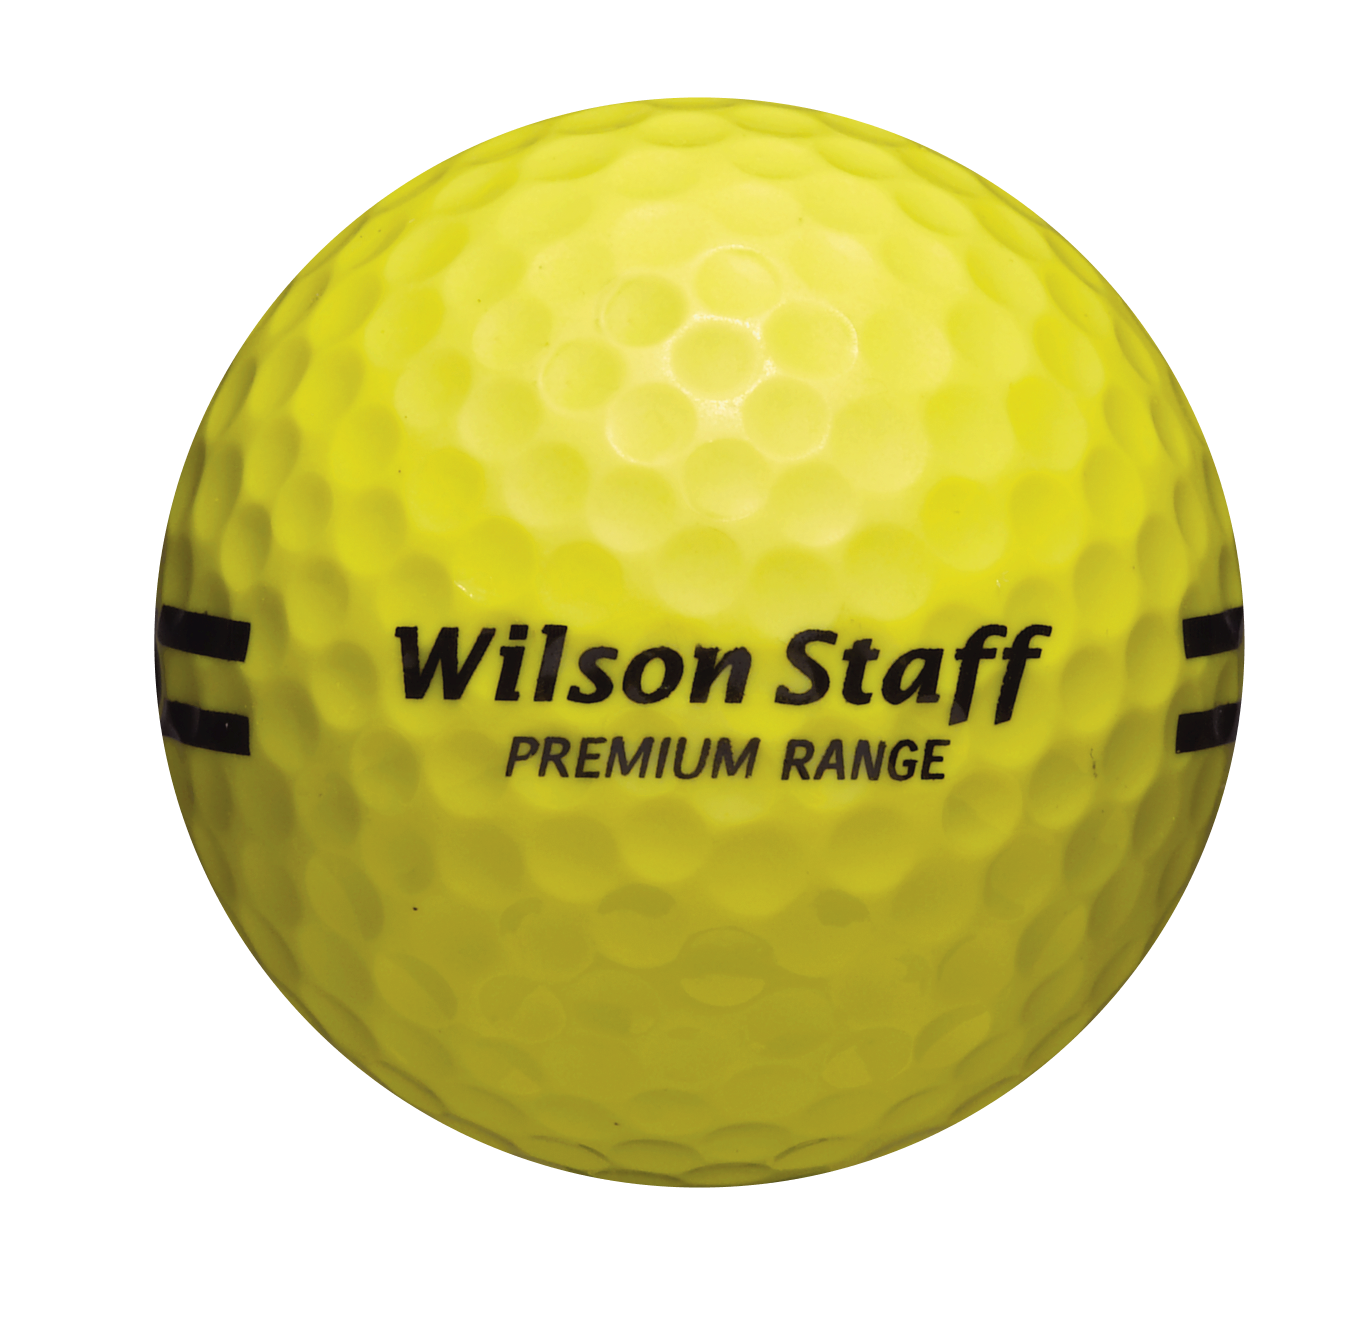 Wilson Staff Range Balls yellow